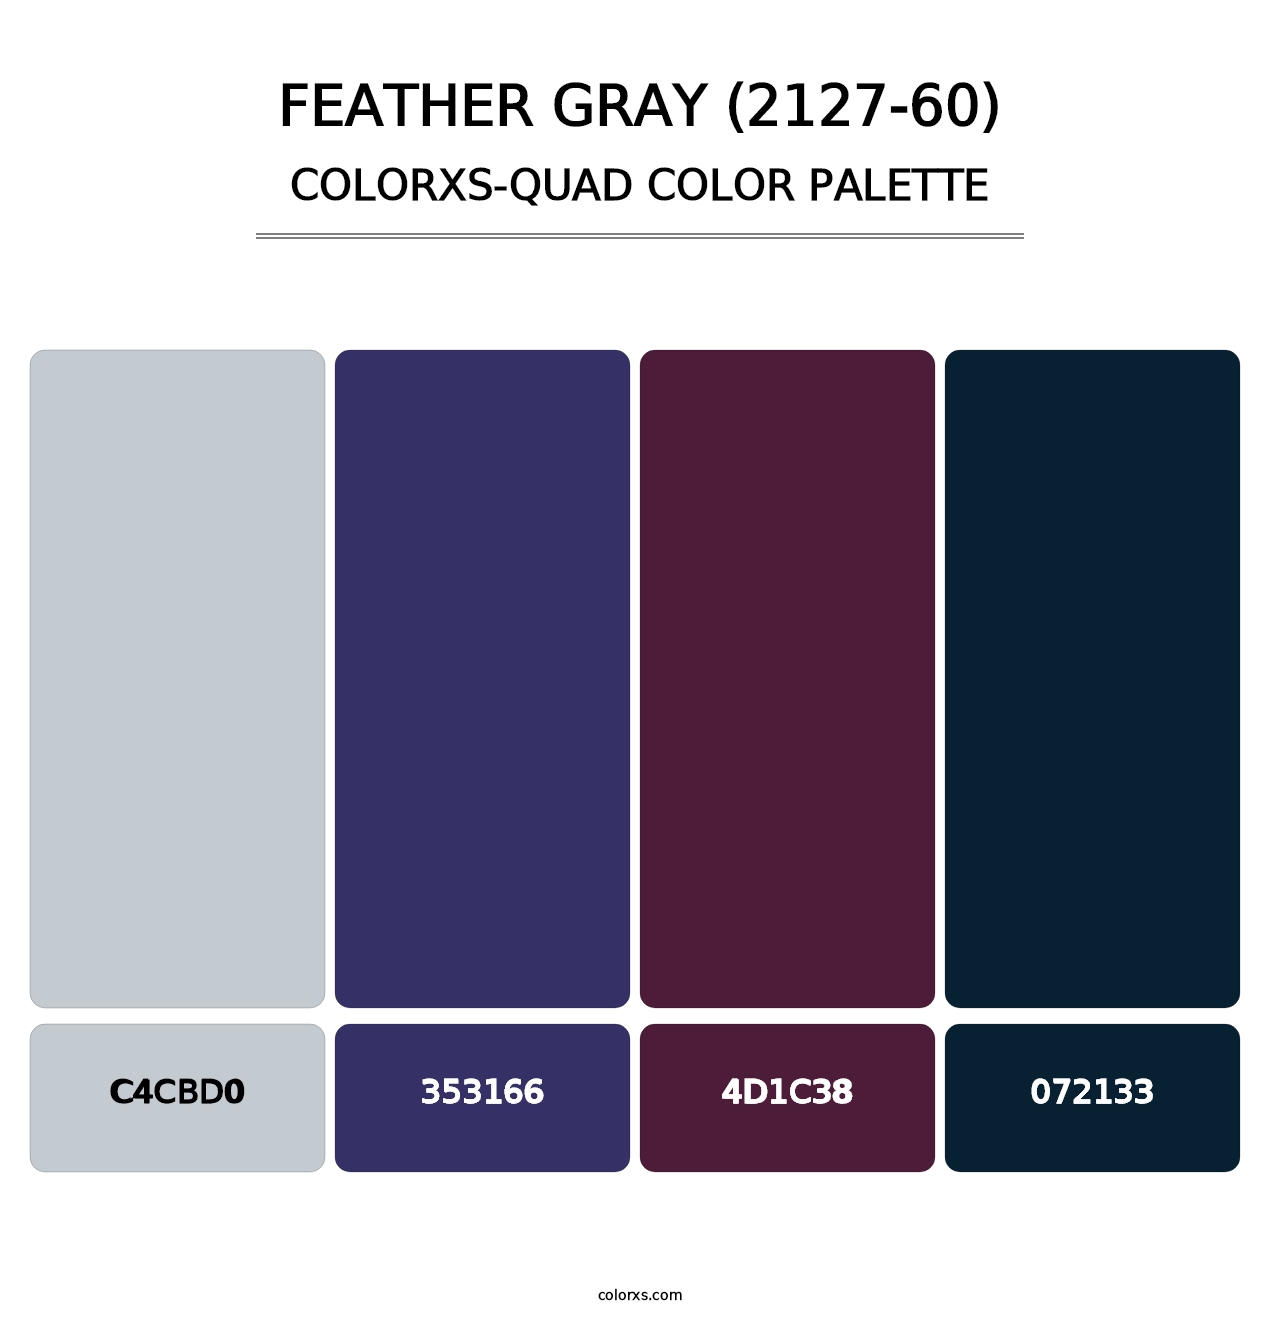 Feather Gray (2127-60) - Colorxs Quad Palette